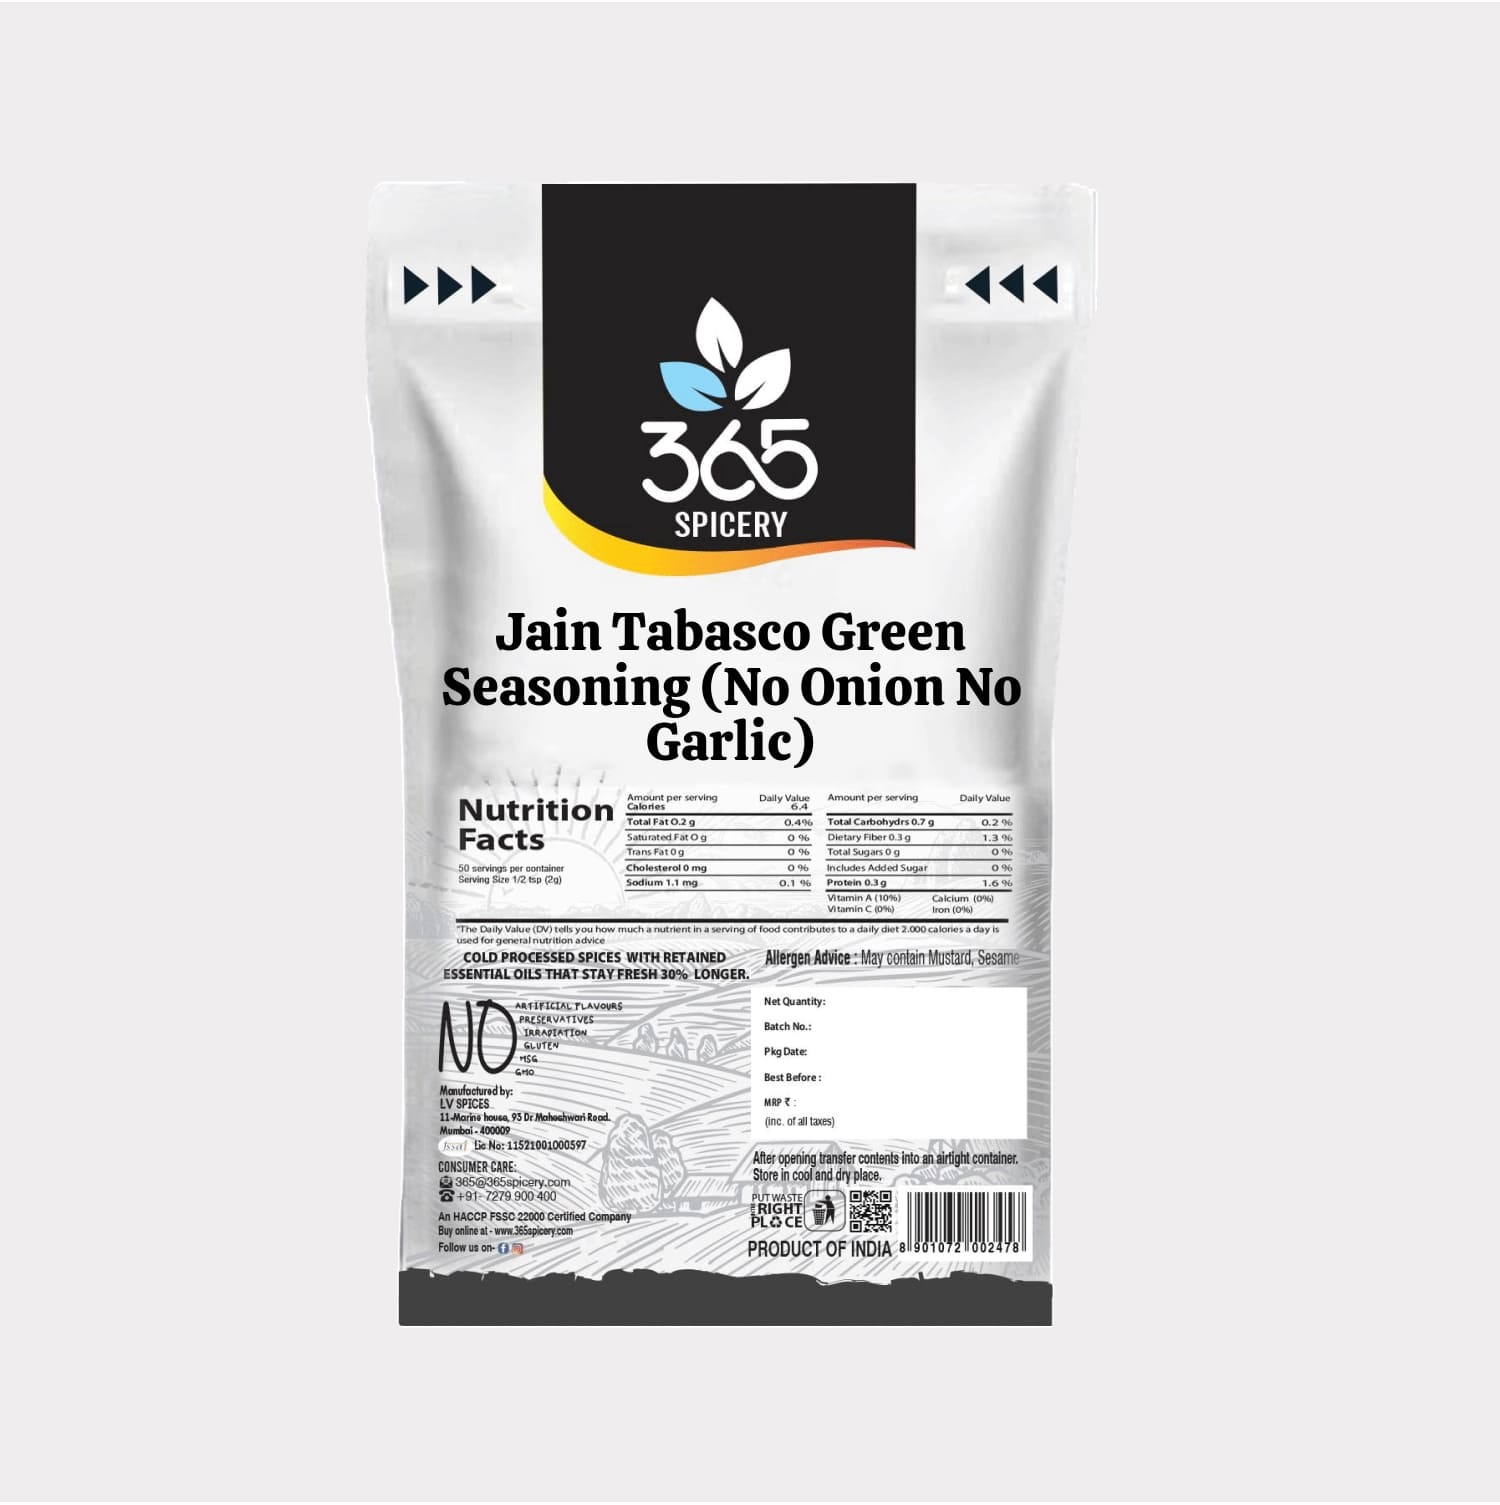 Jain Tabasco Green Seasoning (No Onion No Garlic)